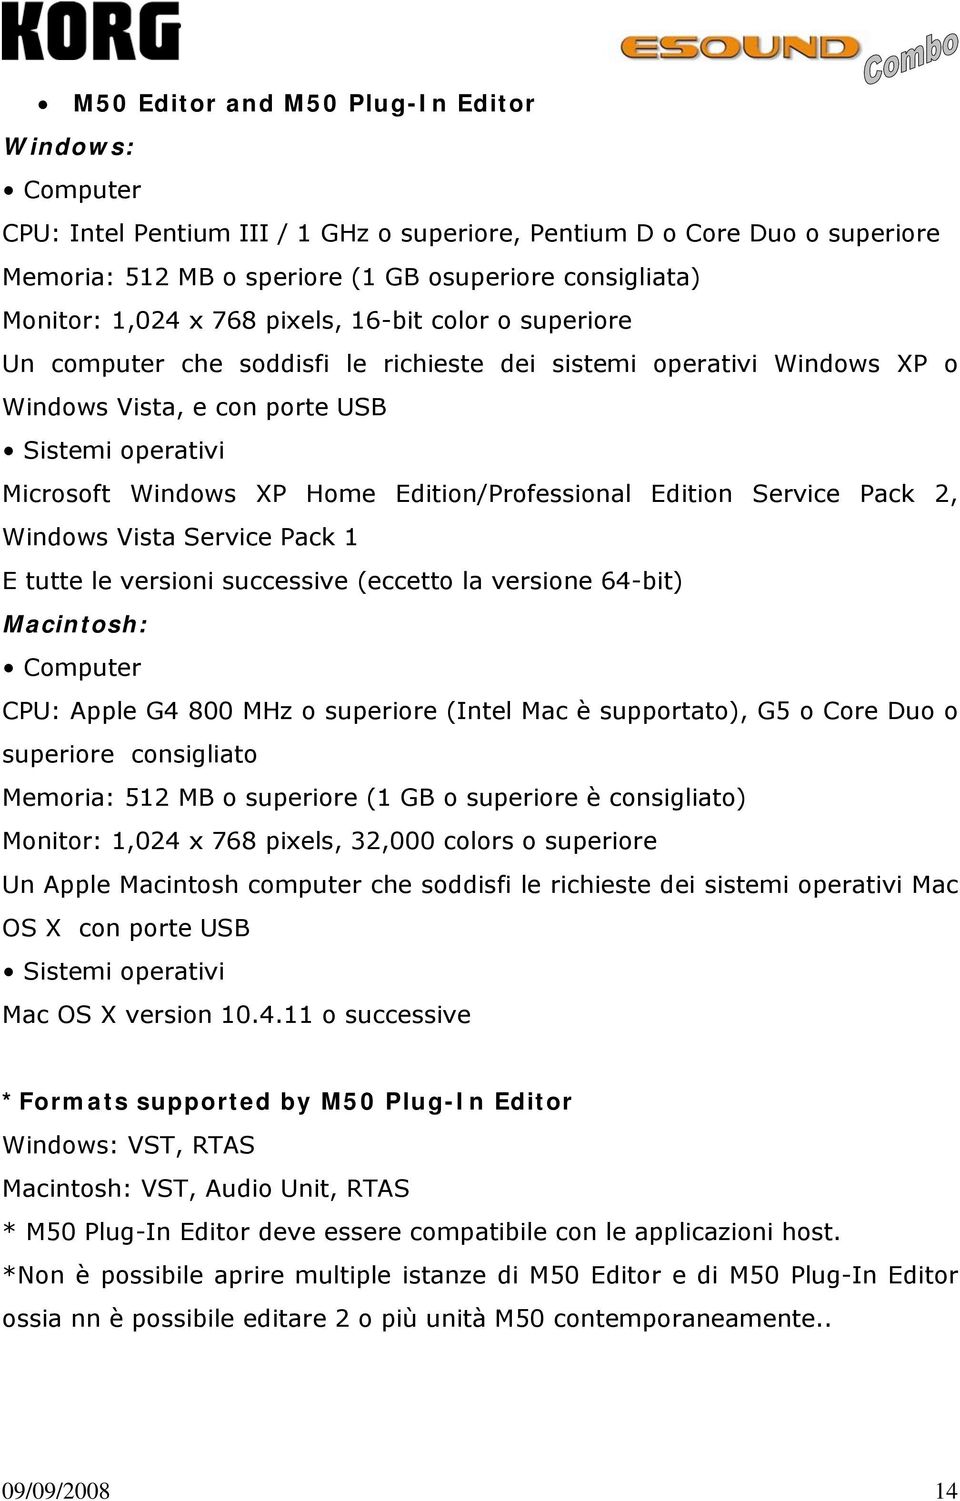 Edition/Professional Edition Service Pack 2, Windows Vista Service Pack 1 E tutte le versioni successive (eccetto la versione 64-bit) Macintosh: Computer CPU: Apple G4 800 MHz o superiore (Intel Mac